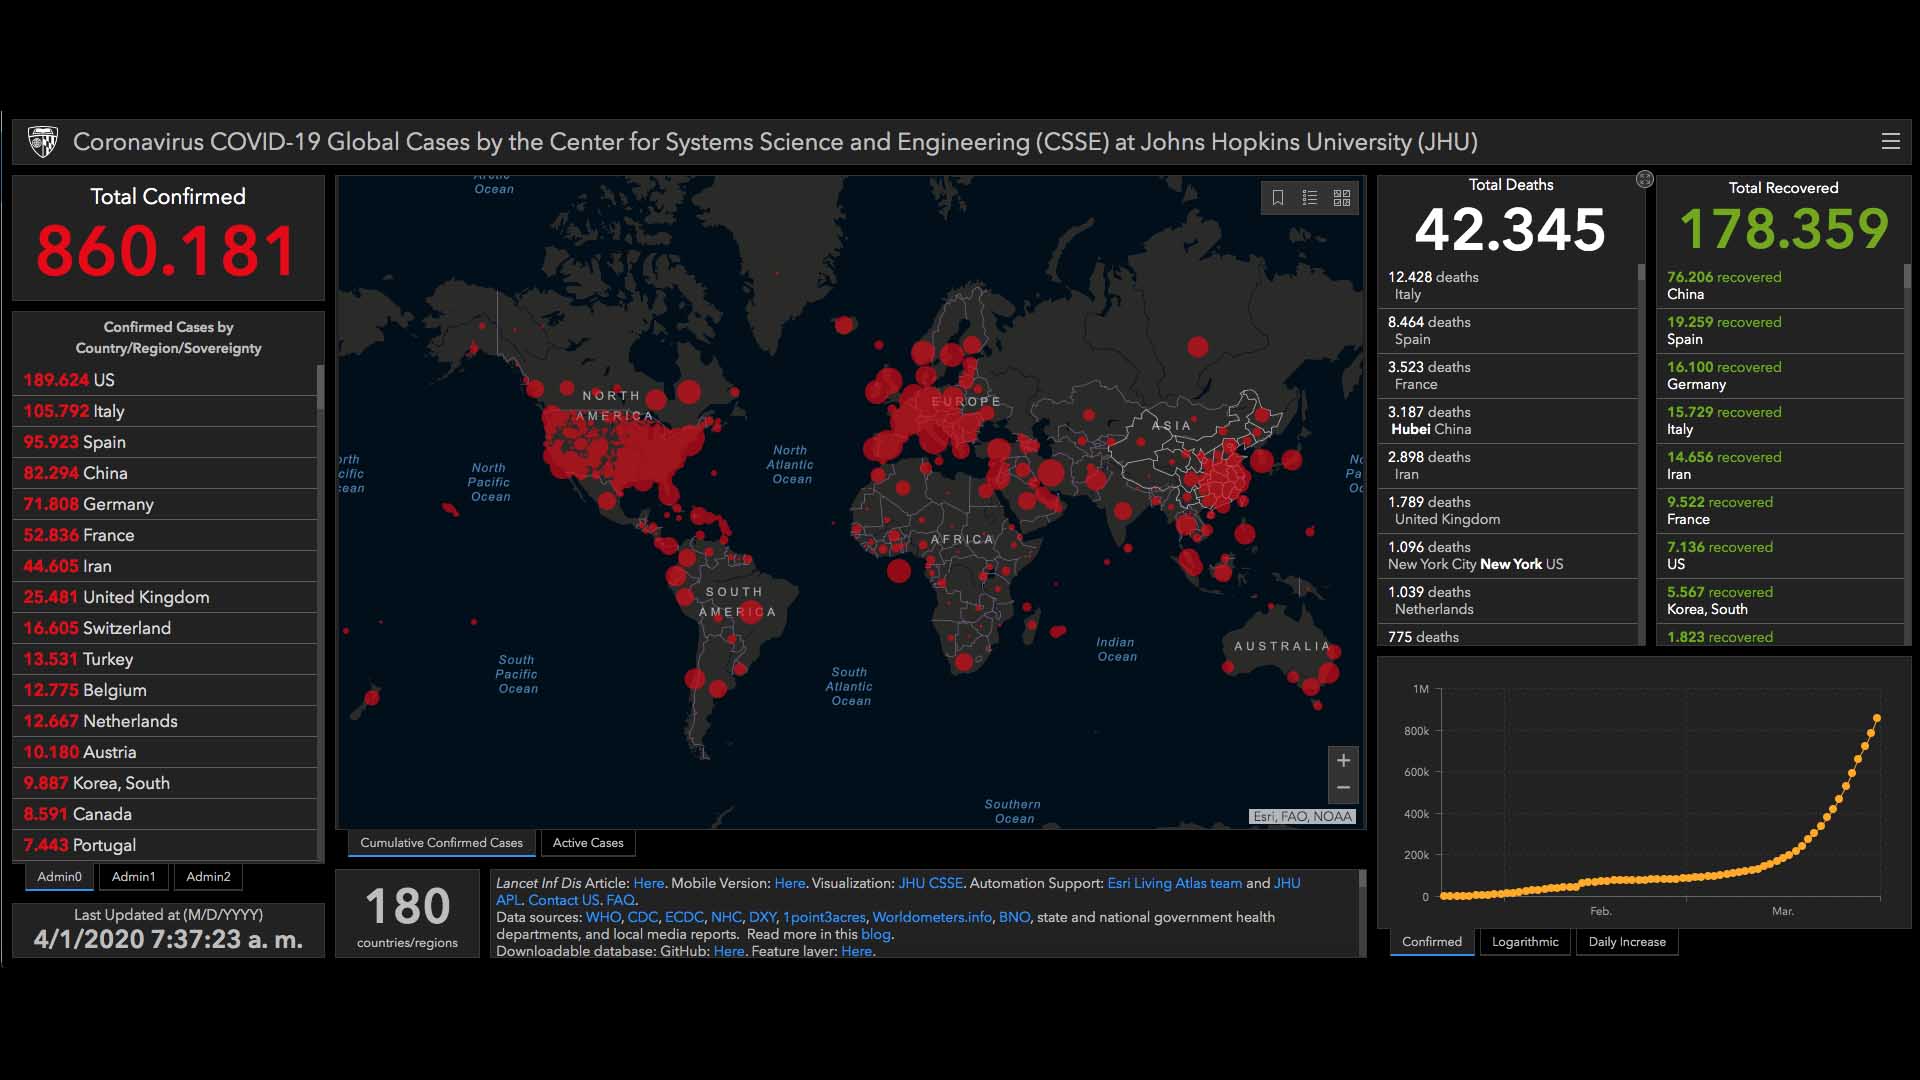 Descubre el mapa interactivo que muestra los efectos del coronavirus en tiempo real